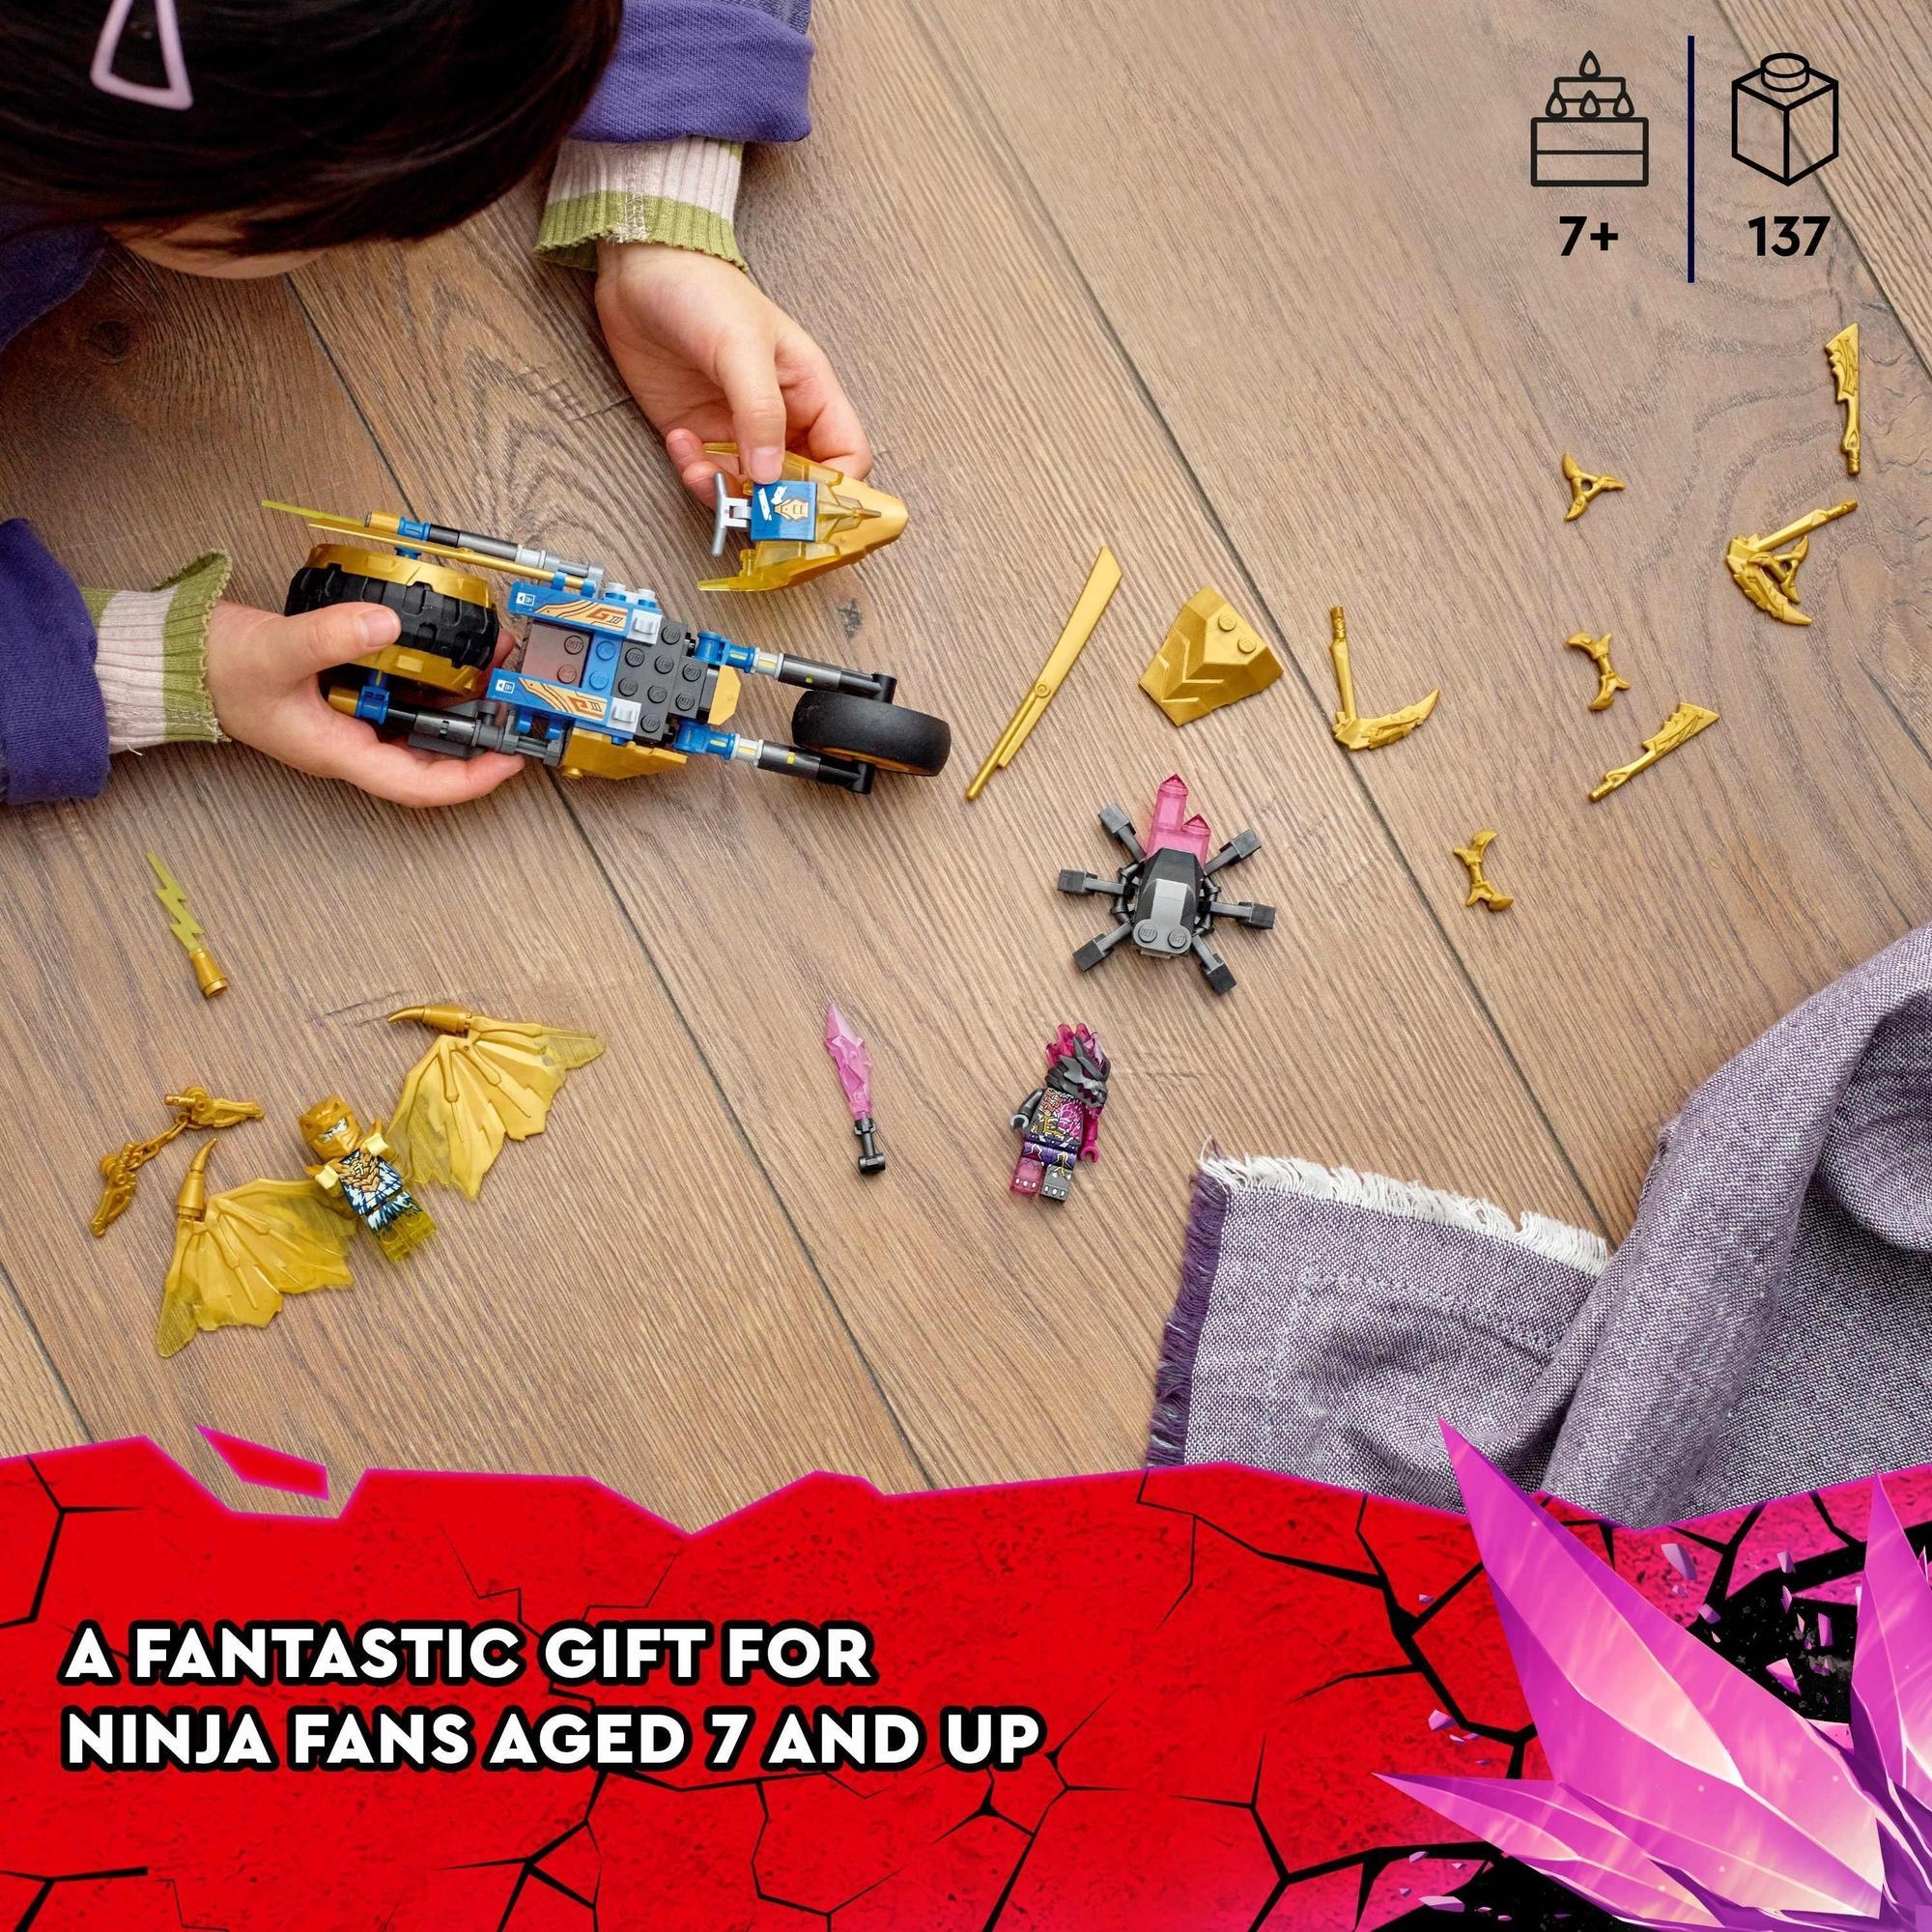 LEGO Ninjago 71768 Xe đua rồng vàng của Jay (137 chi tiết)